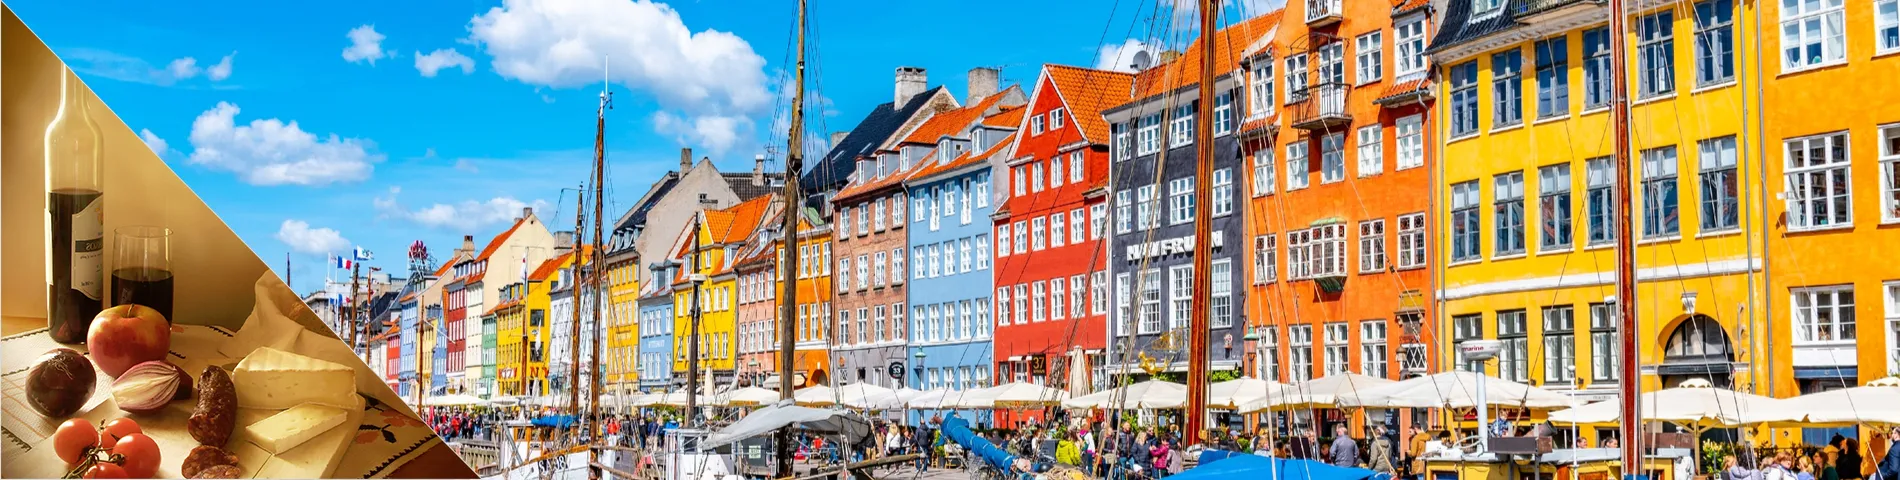 Дания  - Датский и культура